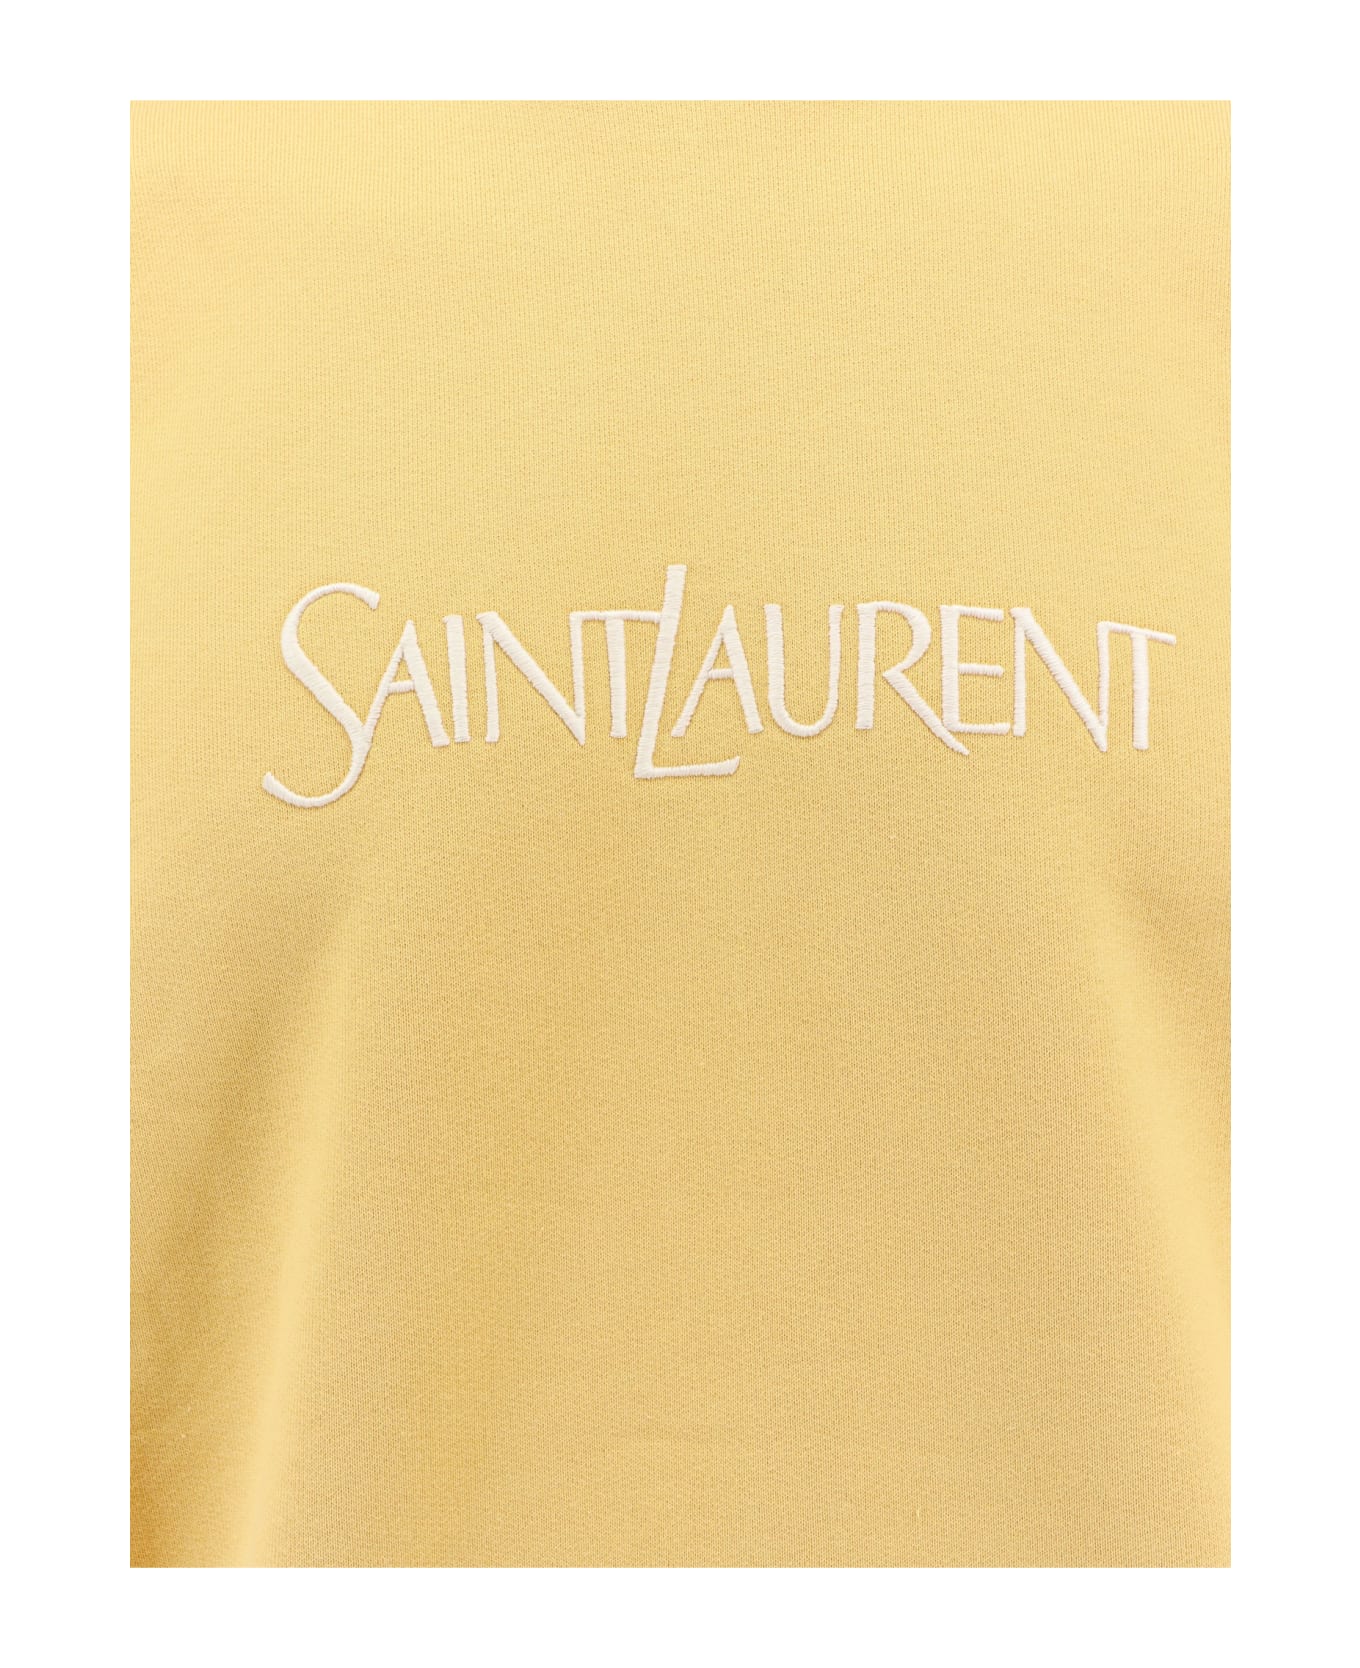 Saint Laurent Logo Embroidery Sweatshirt - Yellow